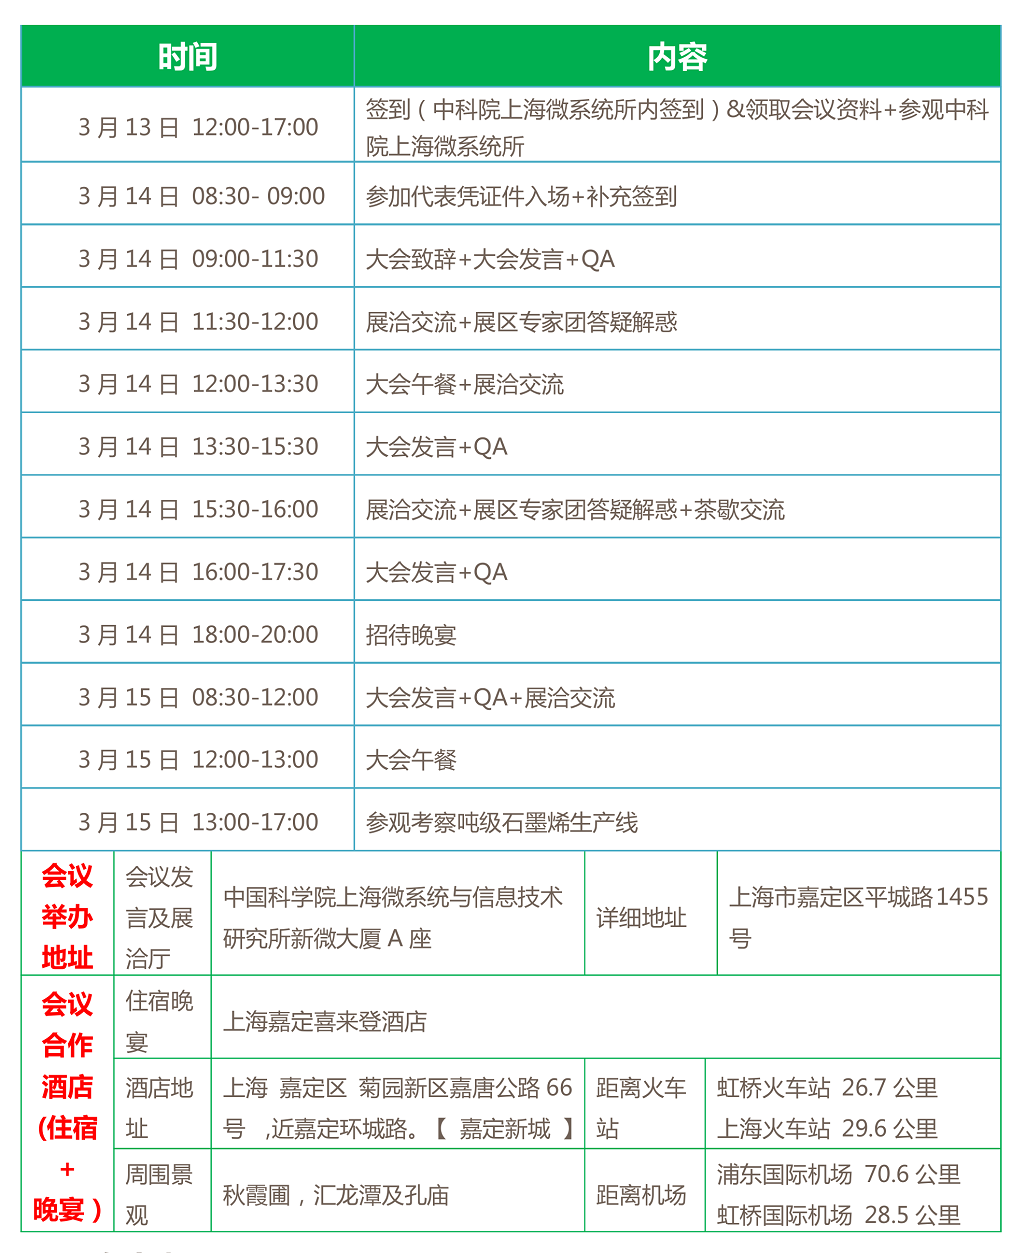 上海烯望材料科技有限公司将在3月13-15日联合举办石墨烯行业会议